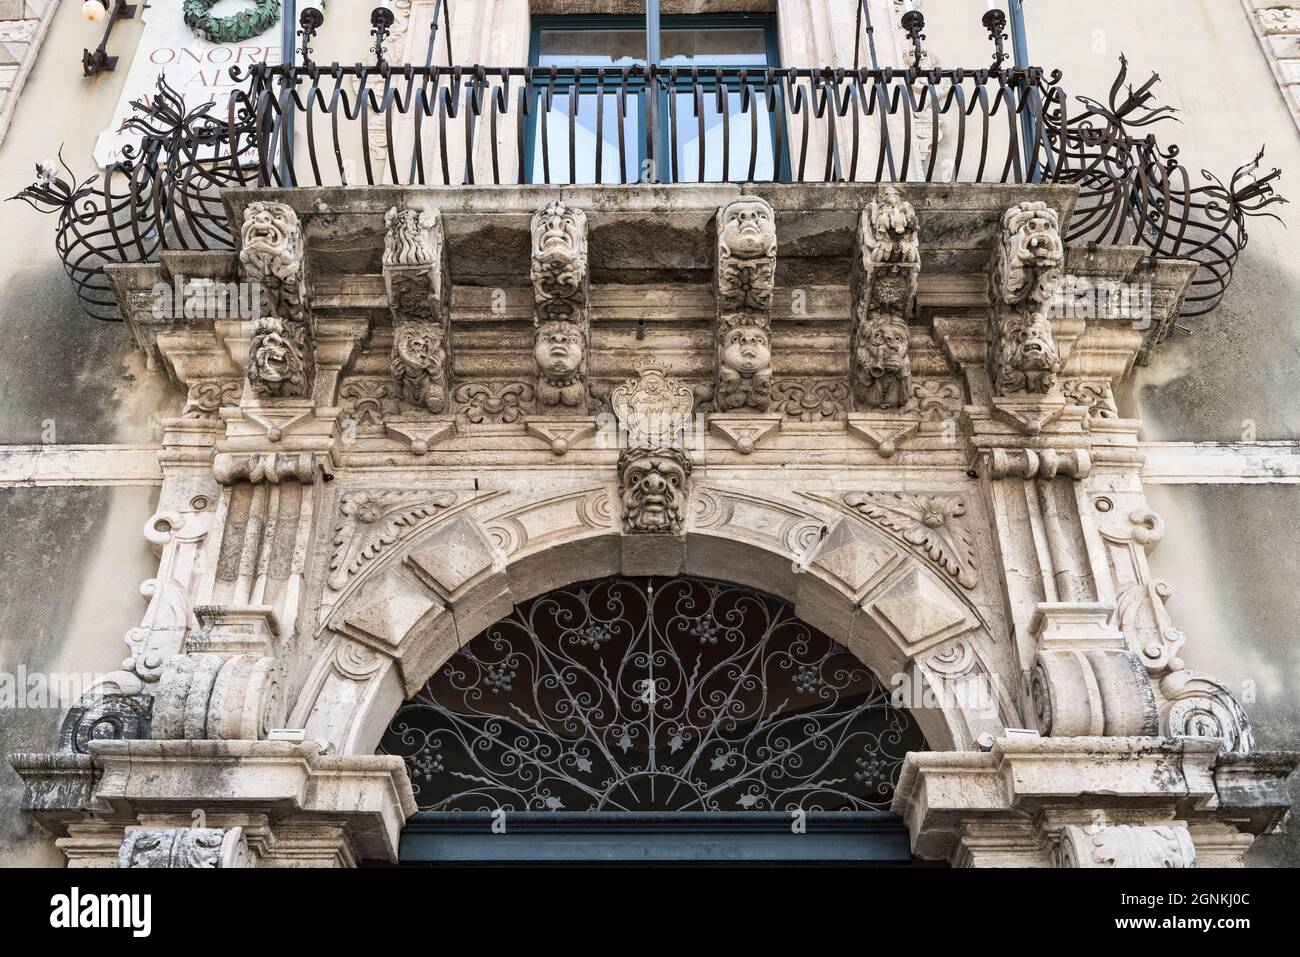 Maschere grottesche scolpite sopra l'ingresso del Palazzo Municipale barocco 18c, Piazza Duomo, Acireale, Sicilia, Italia Foto Stock